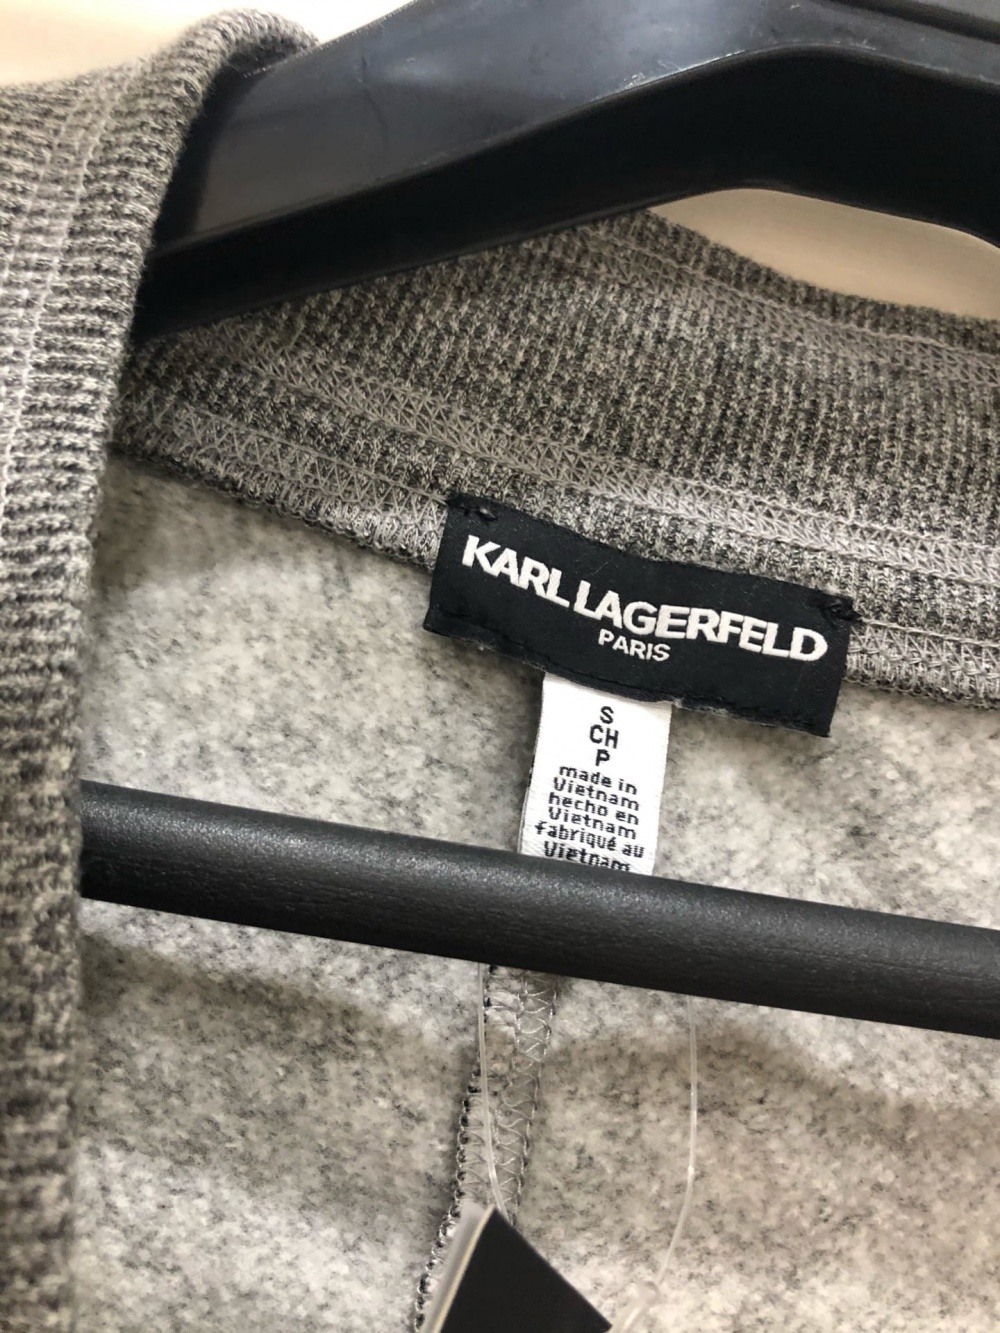 Спортивные брюки с логотипом KARL LAGERFELD. Размер M-L.